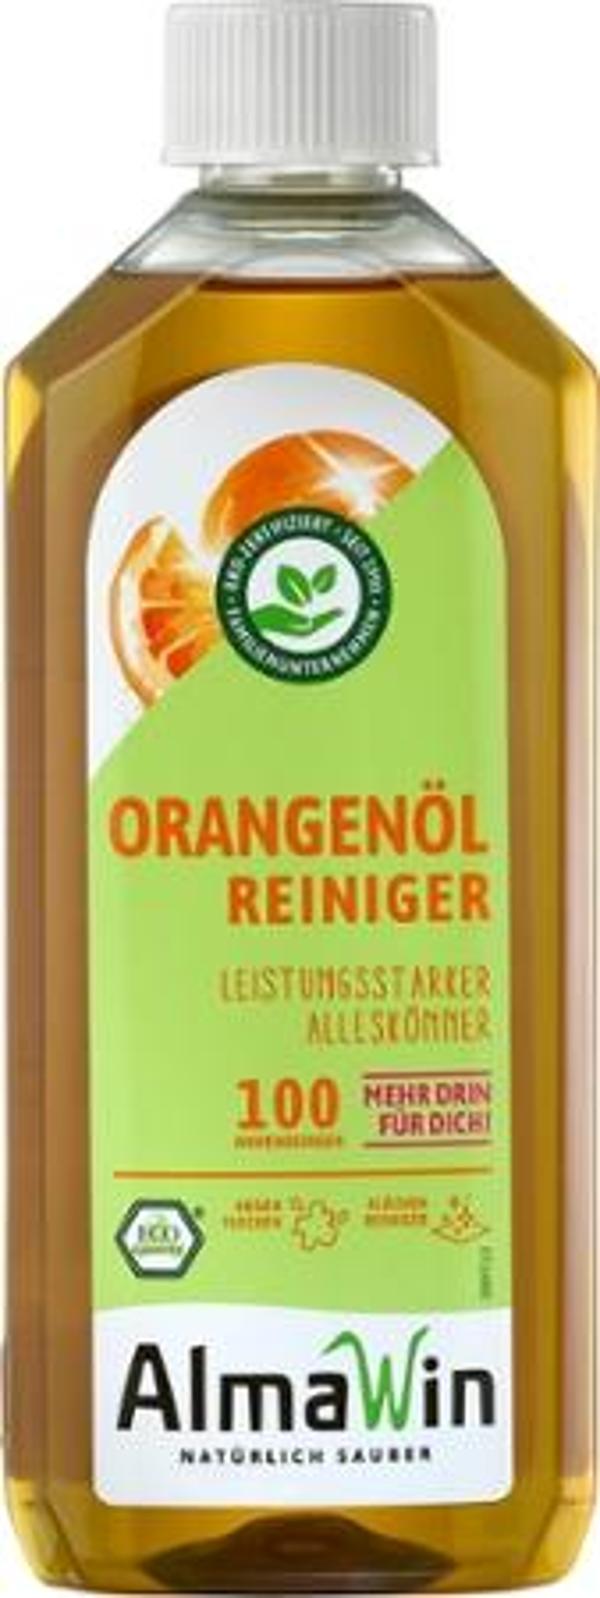 Produktfoto zu Orangenöl-Reiniger ALmanwin